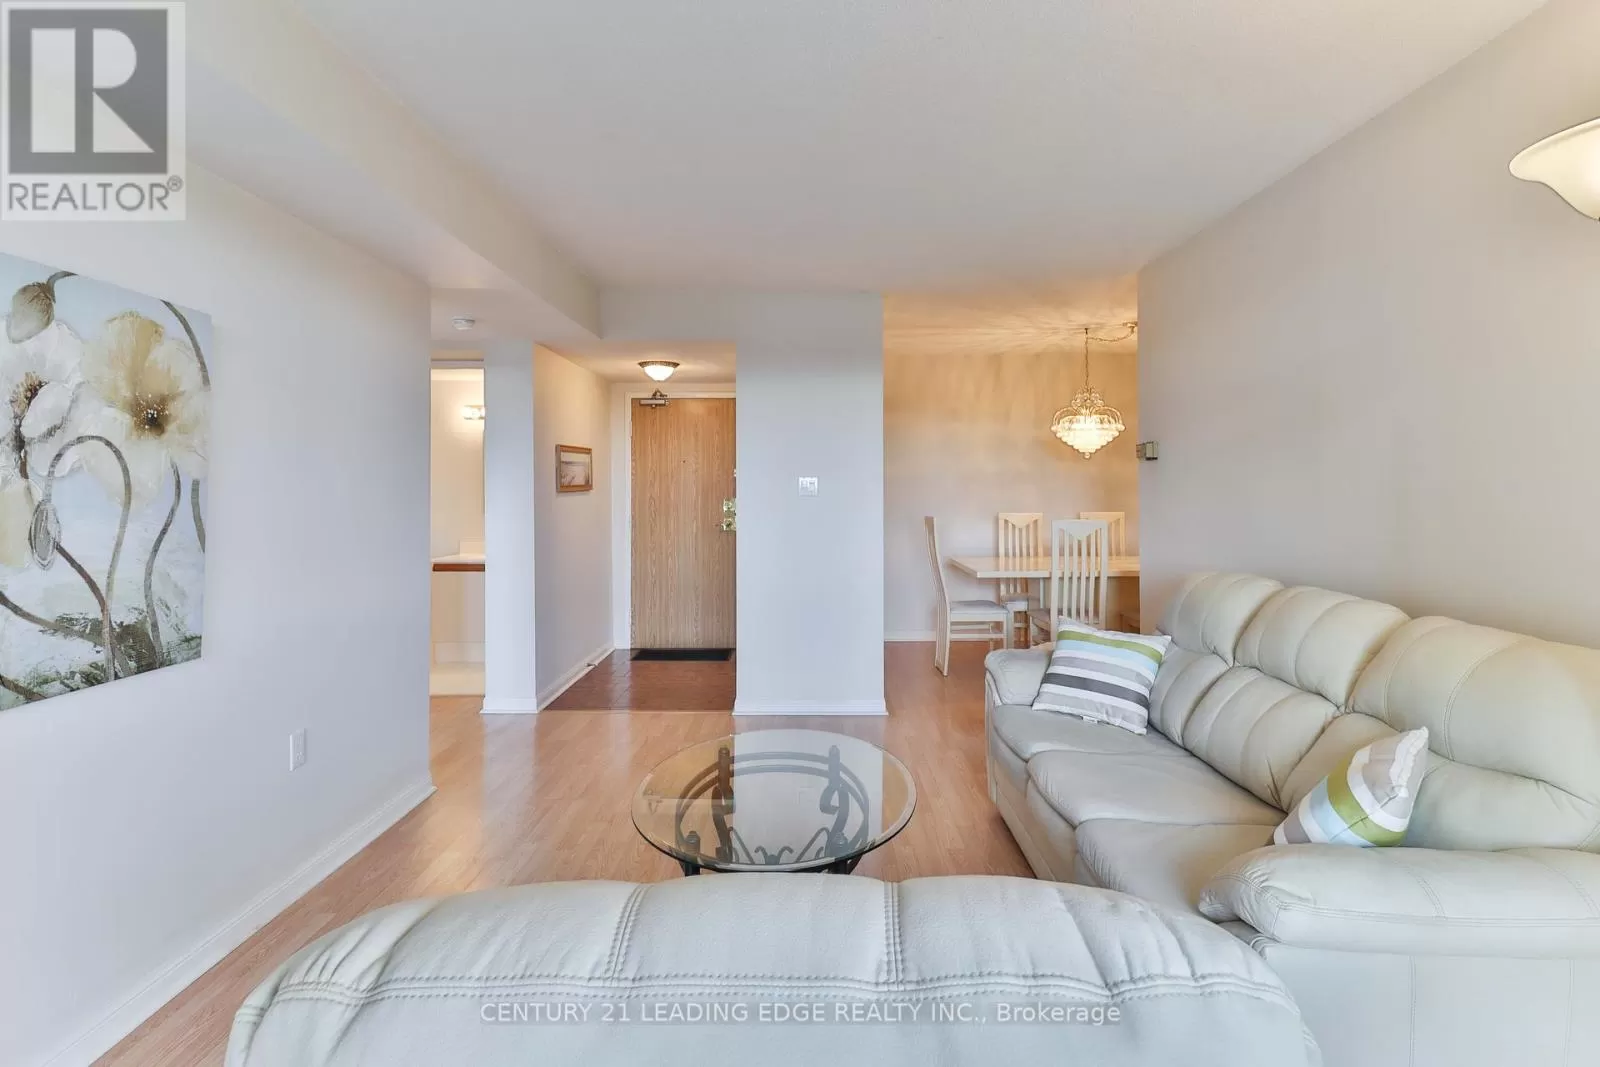 Apartment for rent: 607 - 757 Victoria Park Avenue, Toronto, Ontario M4C 5N8